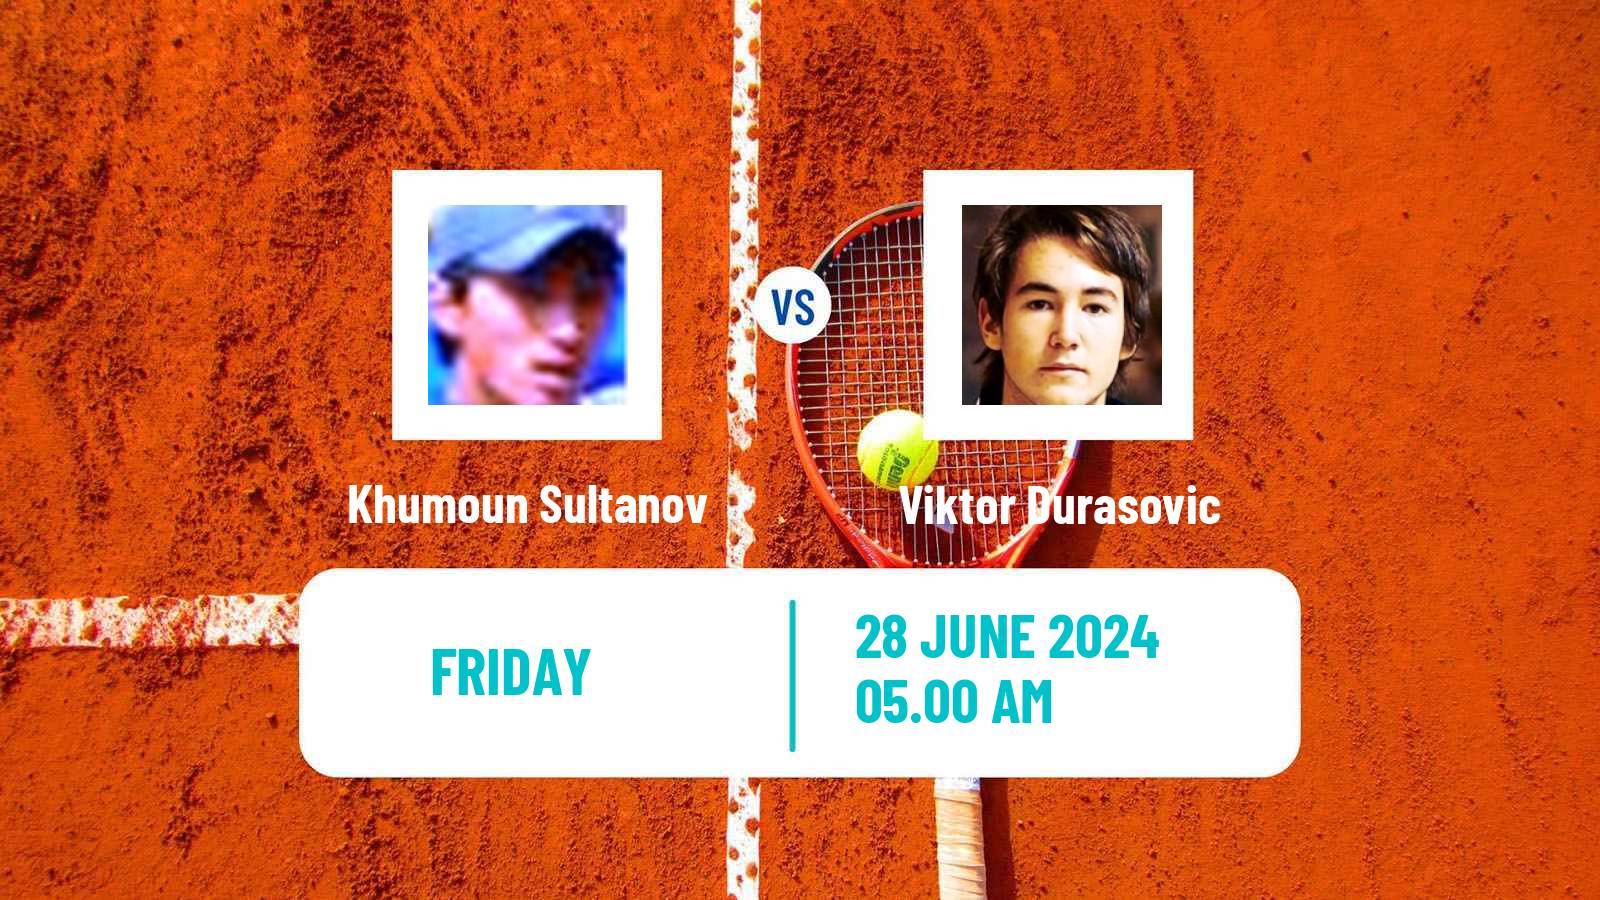 Tennis ITF M25 Brussels Men Khumoun Sultanov - Viktor Durasovic